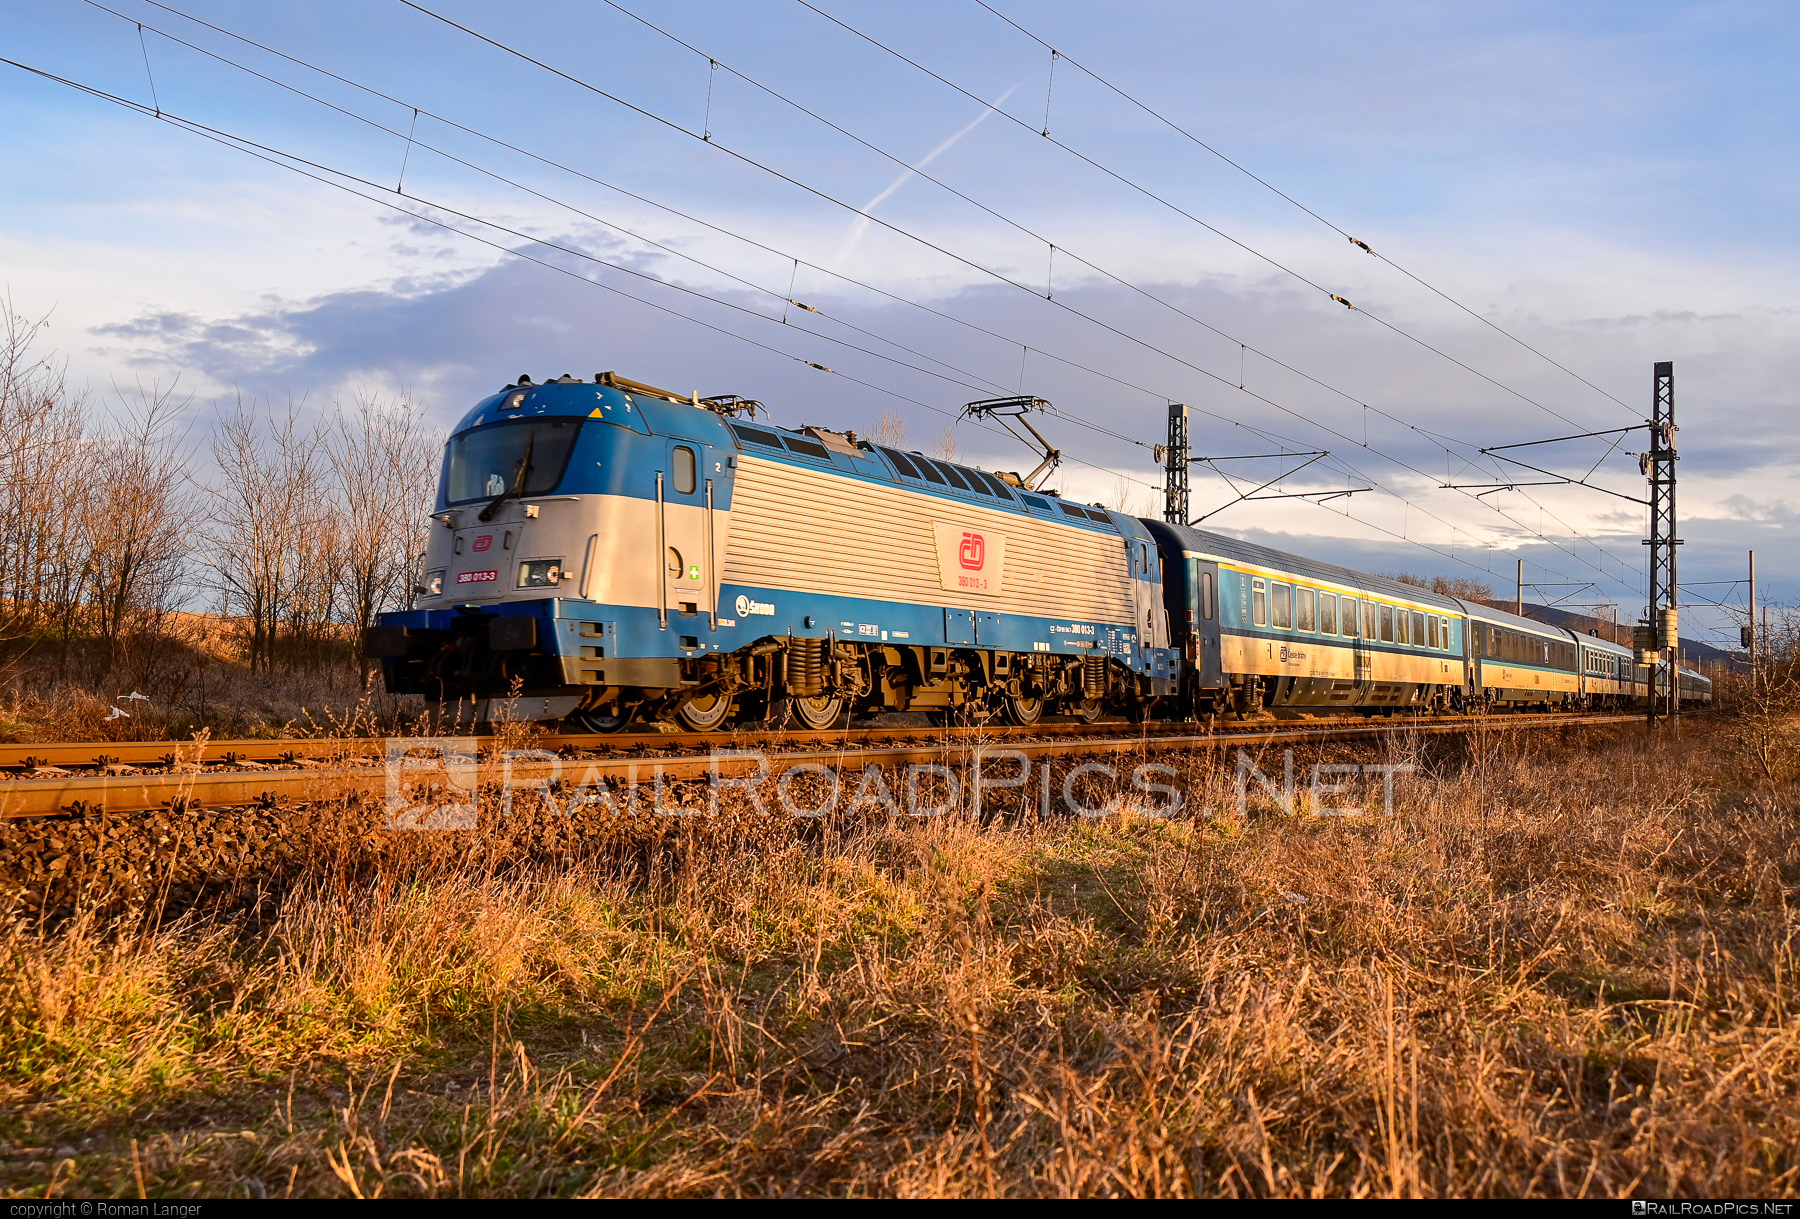 Škoda 109E1 Emil Zátopek - 380 013-3 operated by České dráhy, a.s. #cd #ceskeDrahy #emilzatopeklocomotive #locomotive380 #metropolitan #skoda #skoda109e #skoda109elocomotive